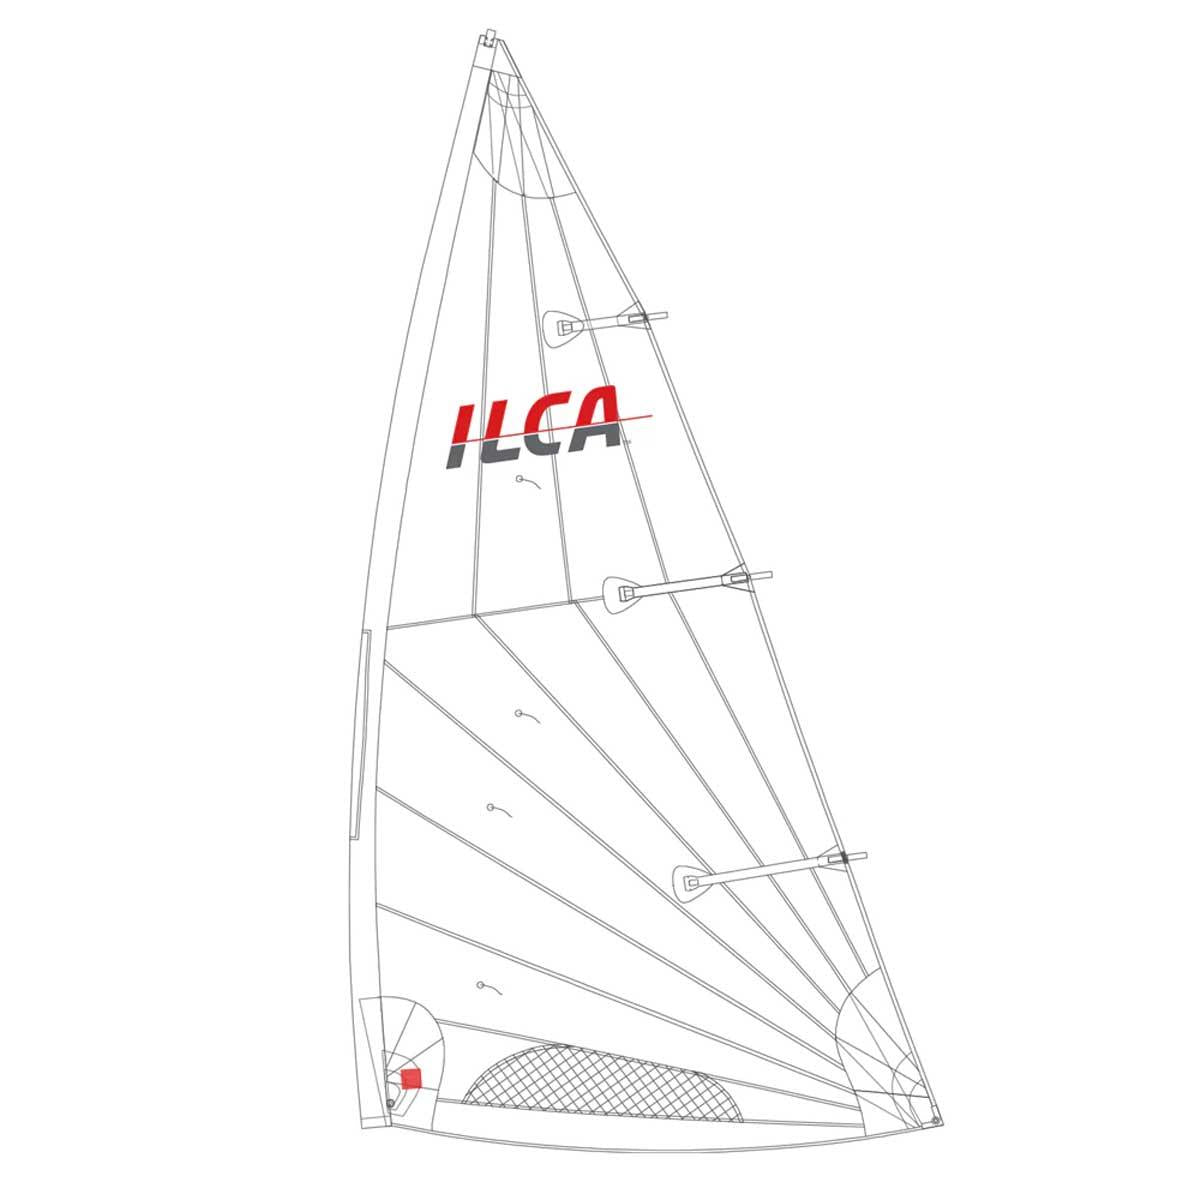 ILCA 7 Mainsail